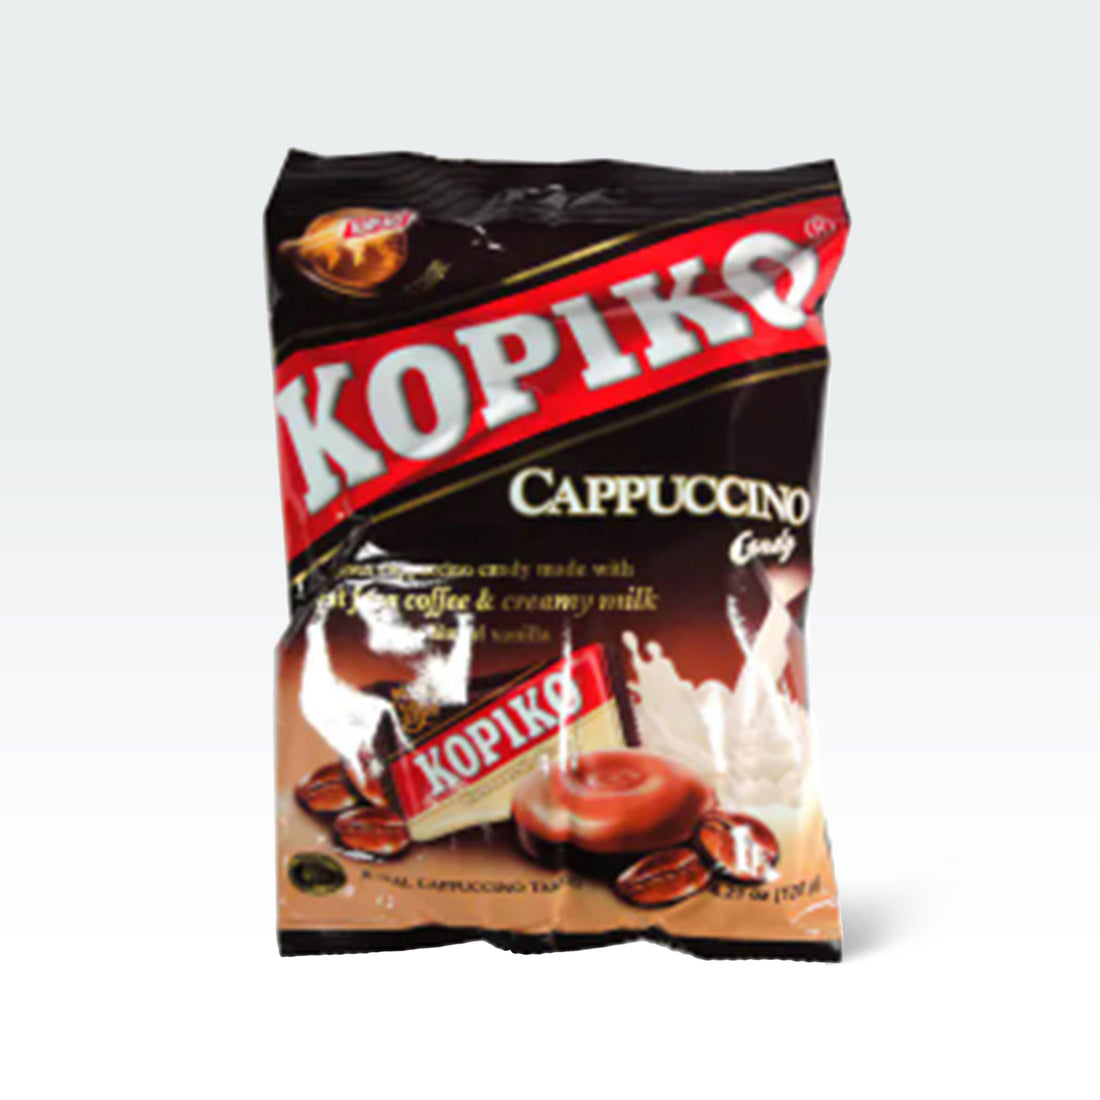 Kopiko Cappuccino Candy 4.23oz(120g) - Anytime Basket